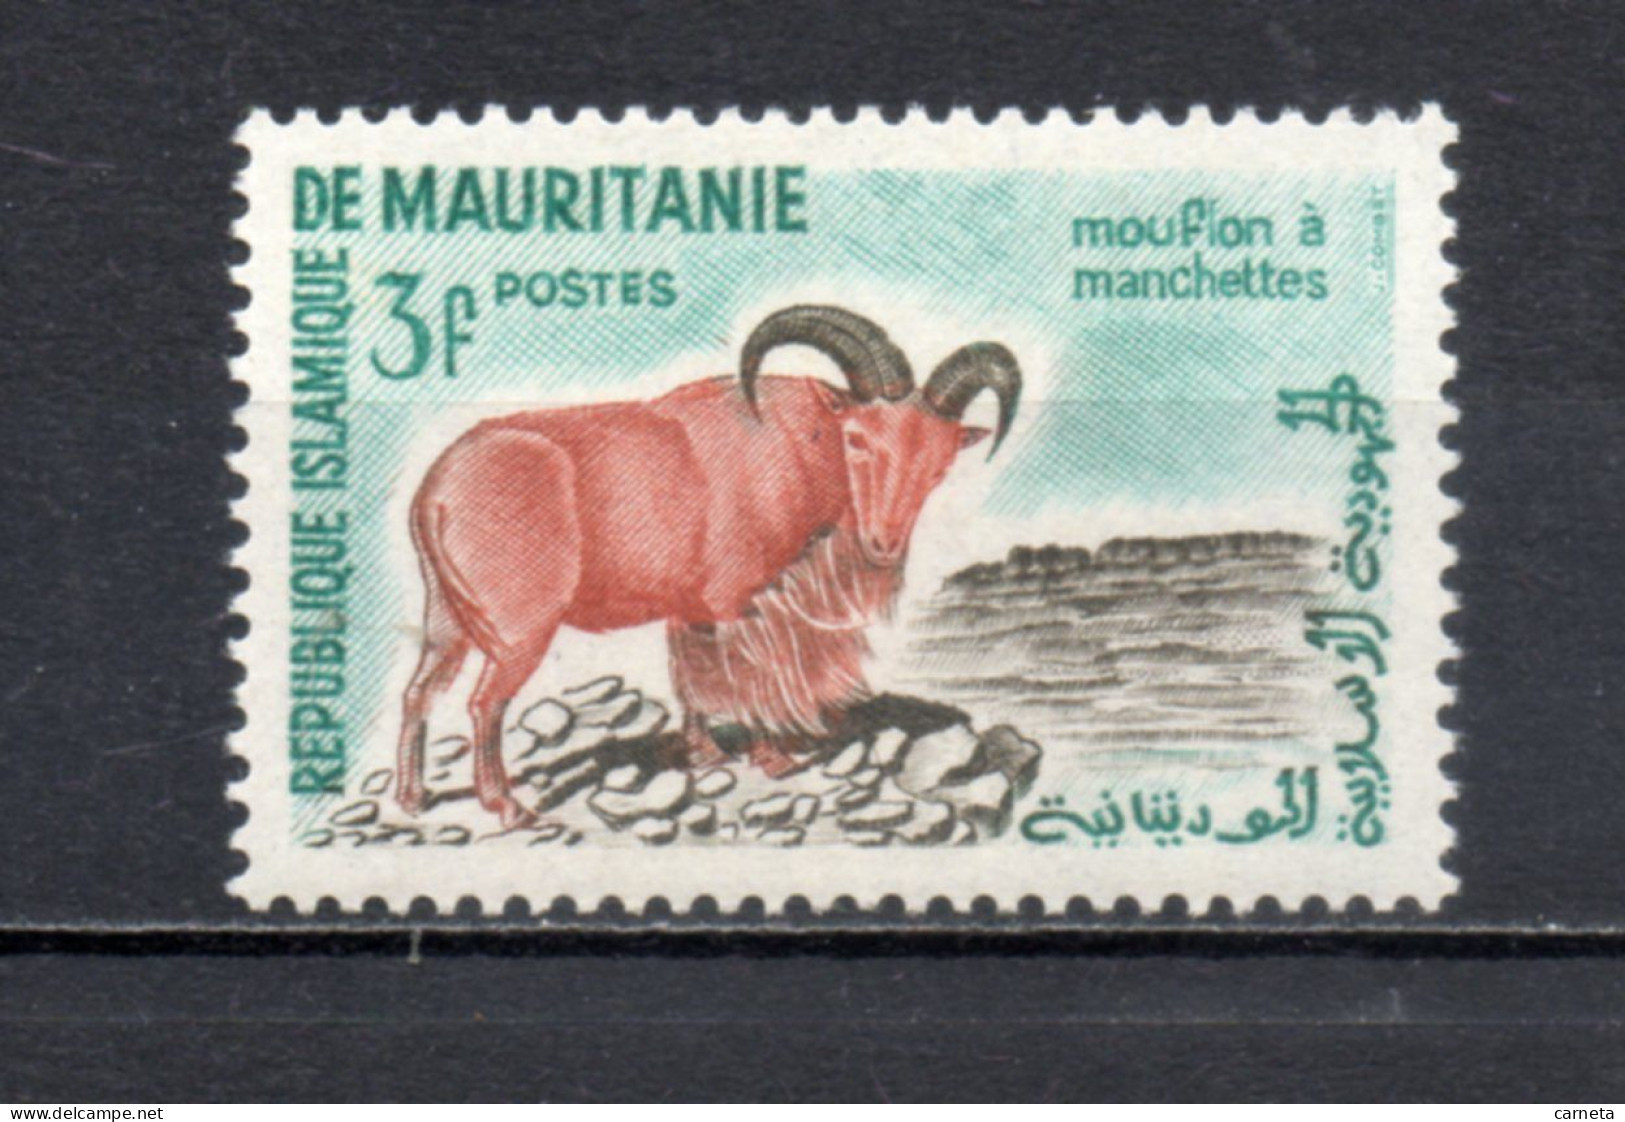 MAURITANIE  N° 143   NEUF SANS CHARNIERE   COTE 0.80€    ANIMAUX FAUNE - Mauritanie (1960-...)